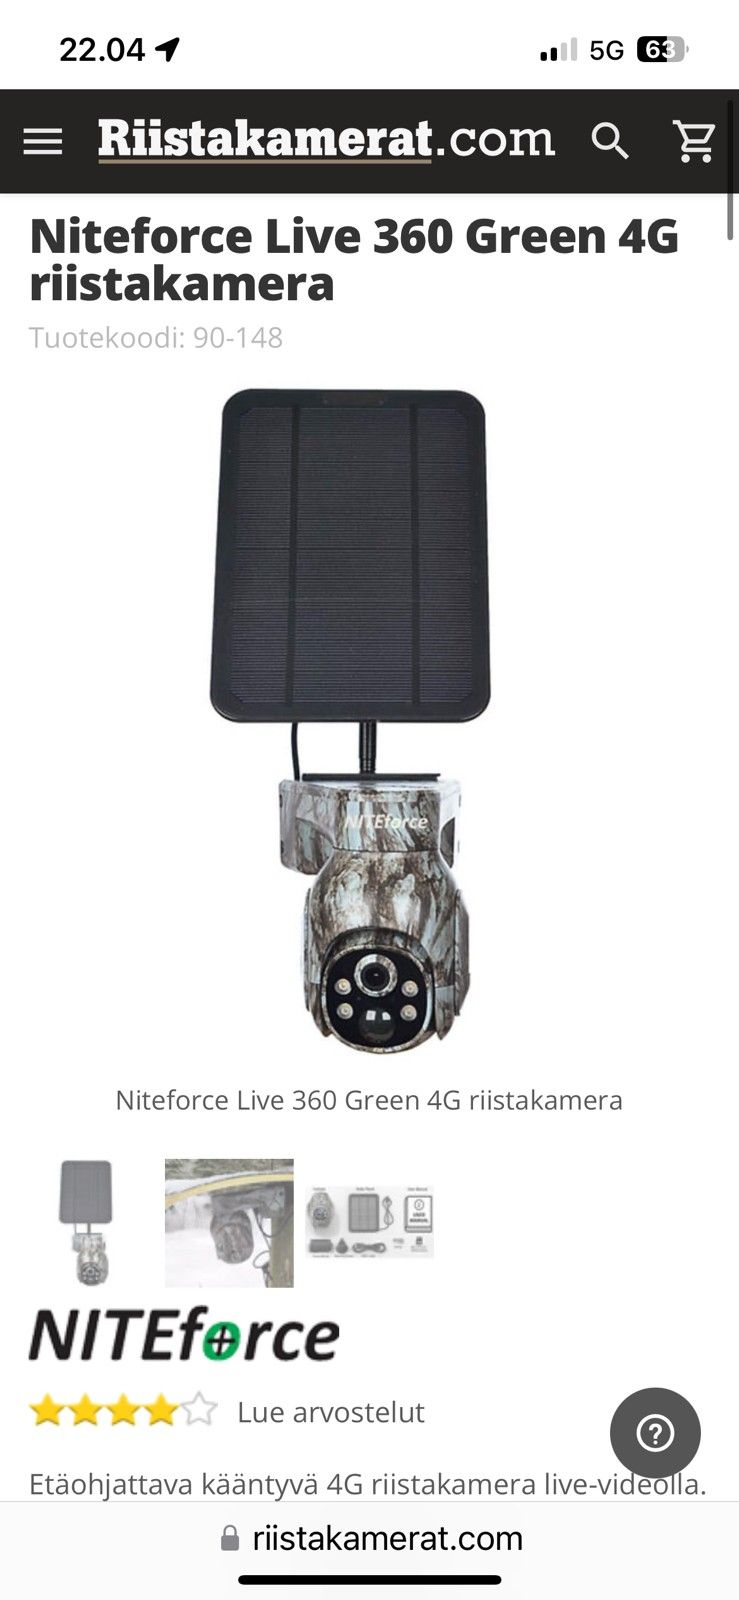 Niteforce 360 live kamera, 2kk käytetty, hyvä peli, itsellä ei tarvetta.